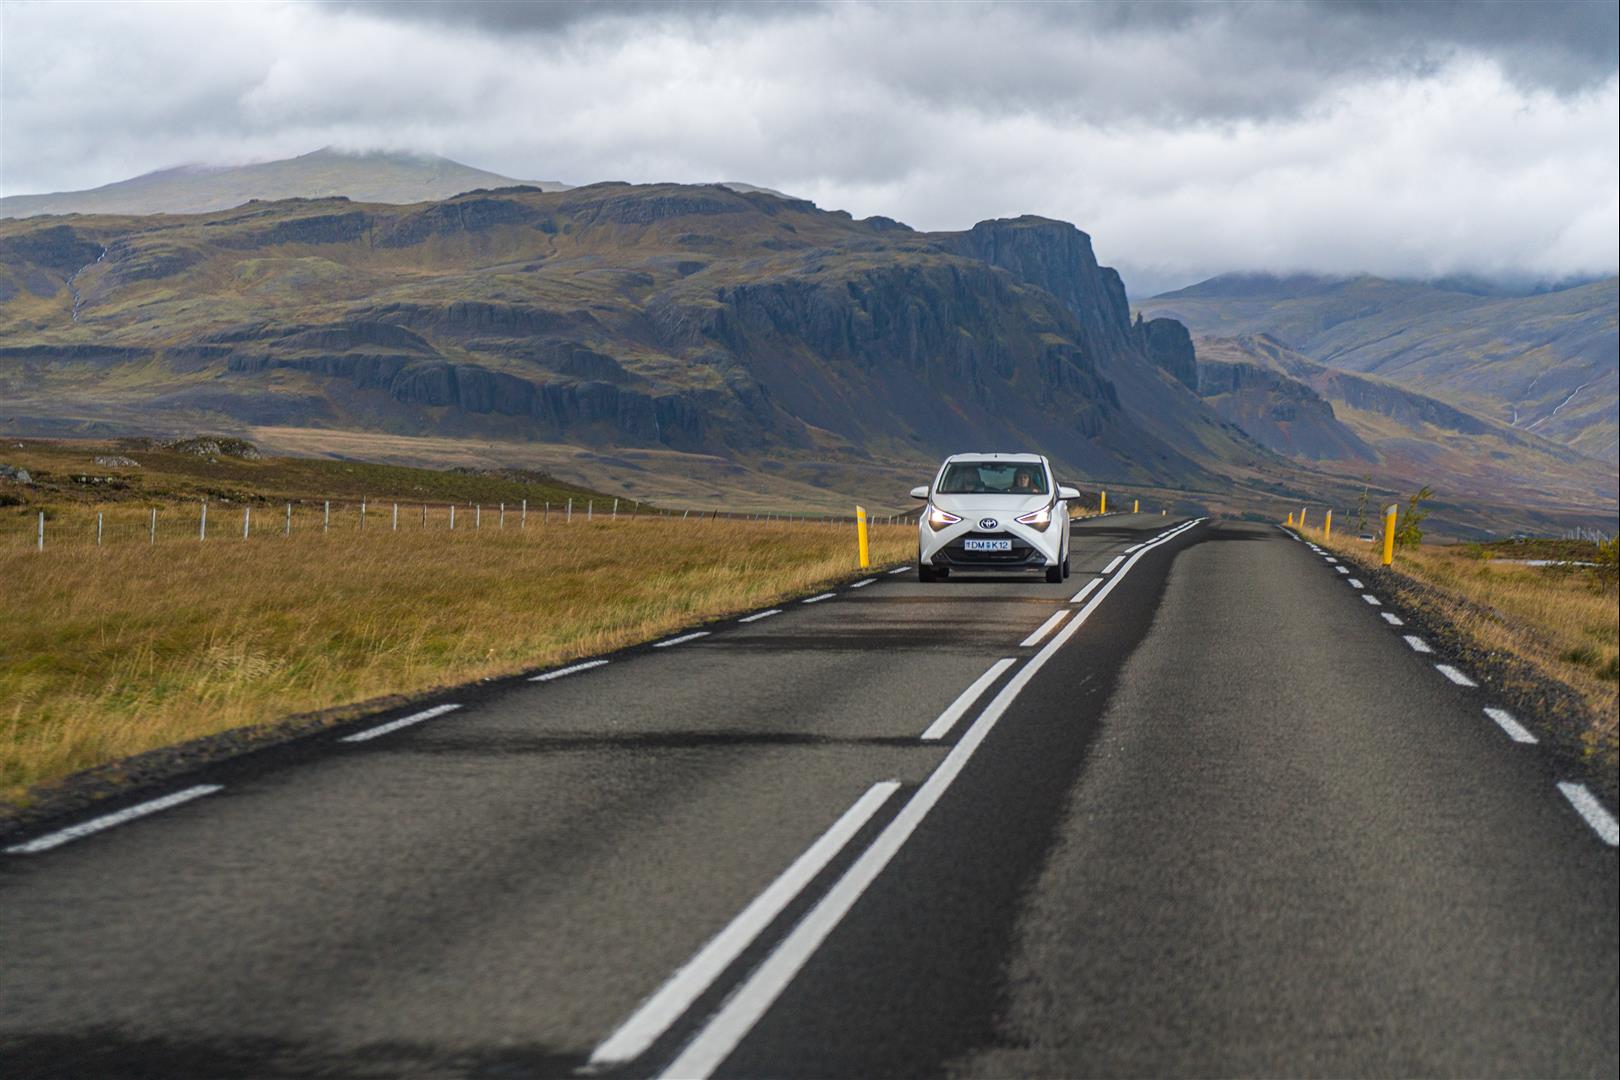 [冰島] 2019 冰島極光自助旅行 Day01 - 英國、雷克雅維克、熔岩瀑布、博爾加內斯